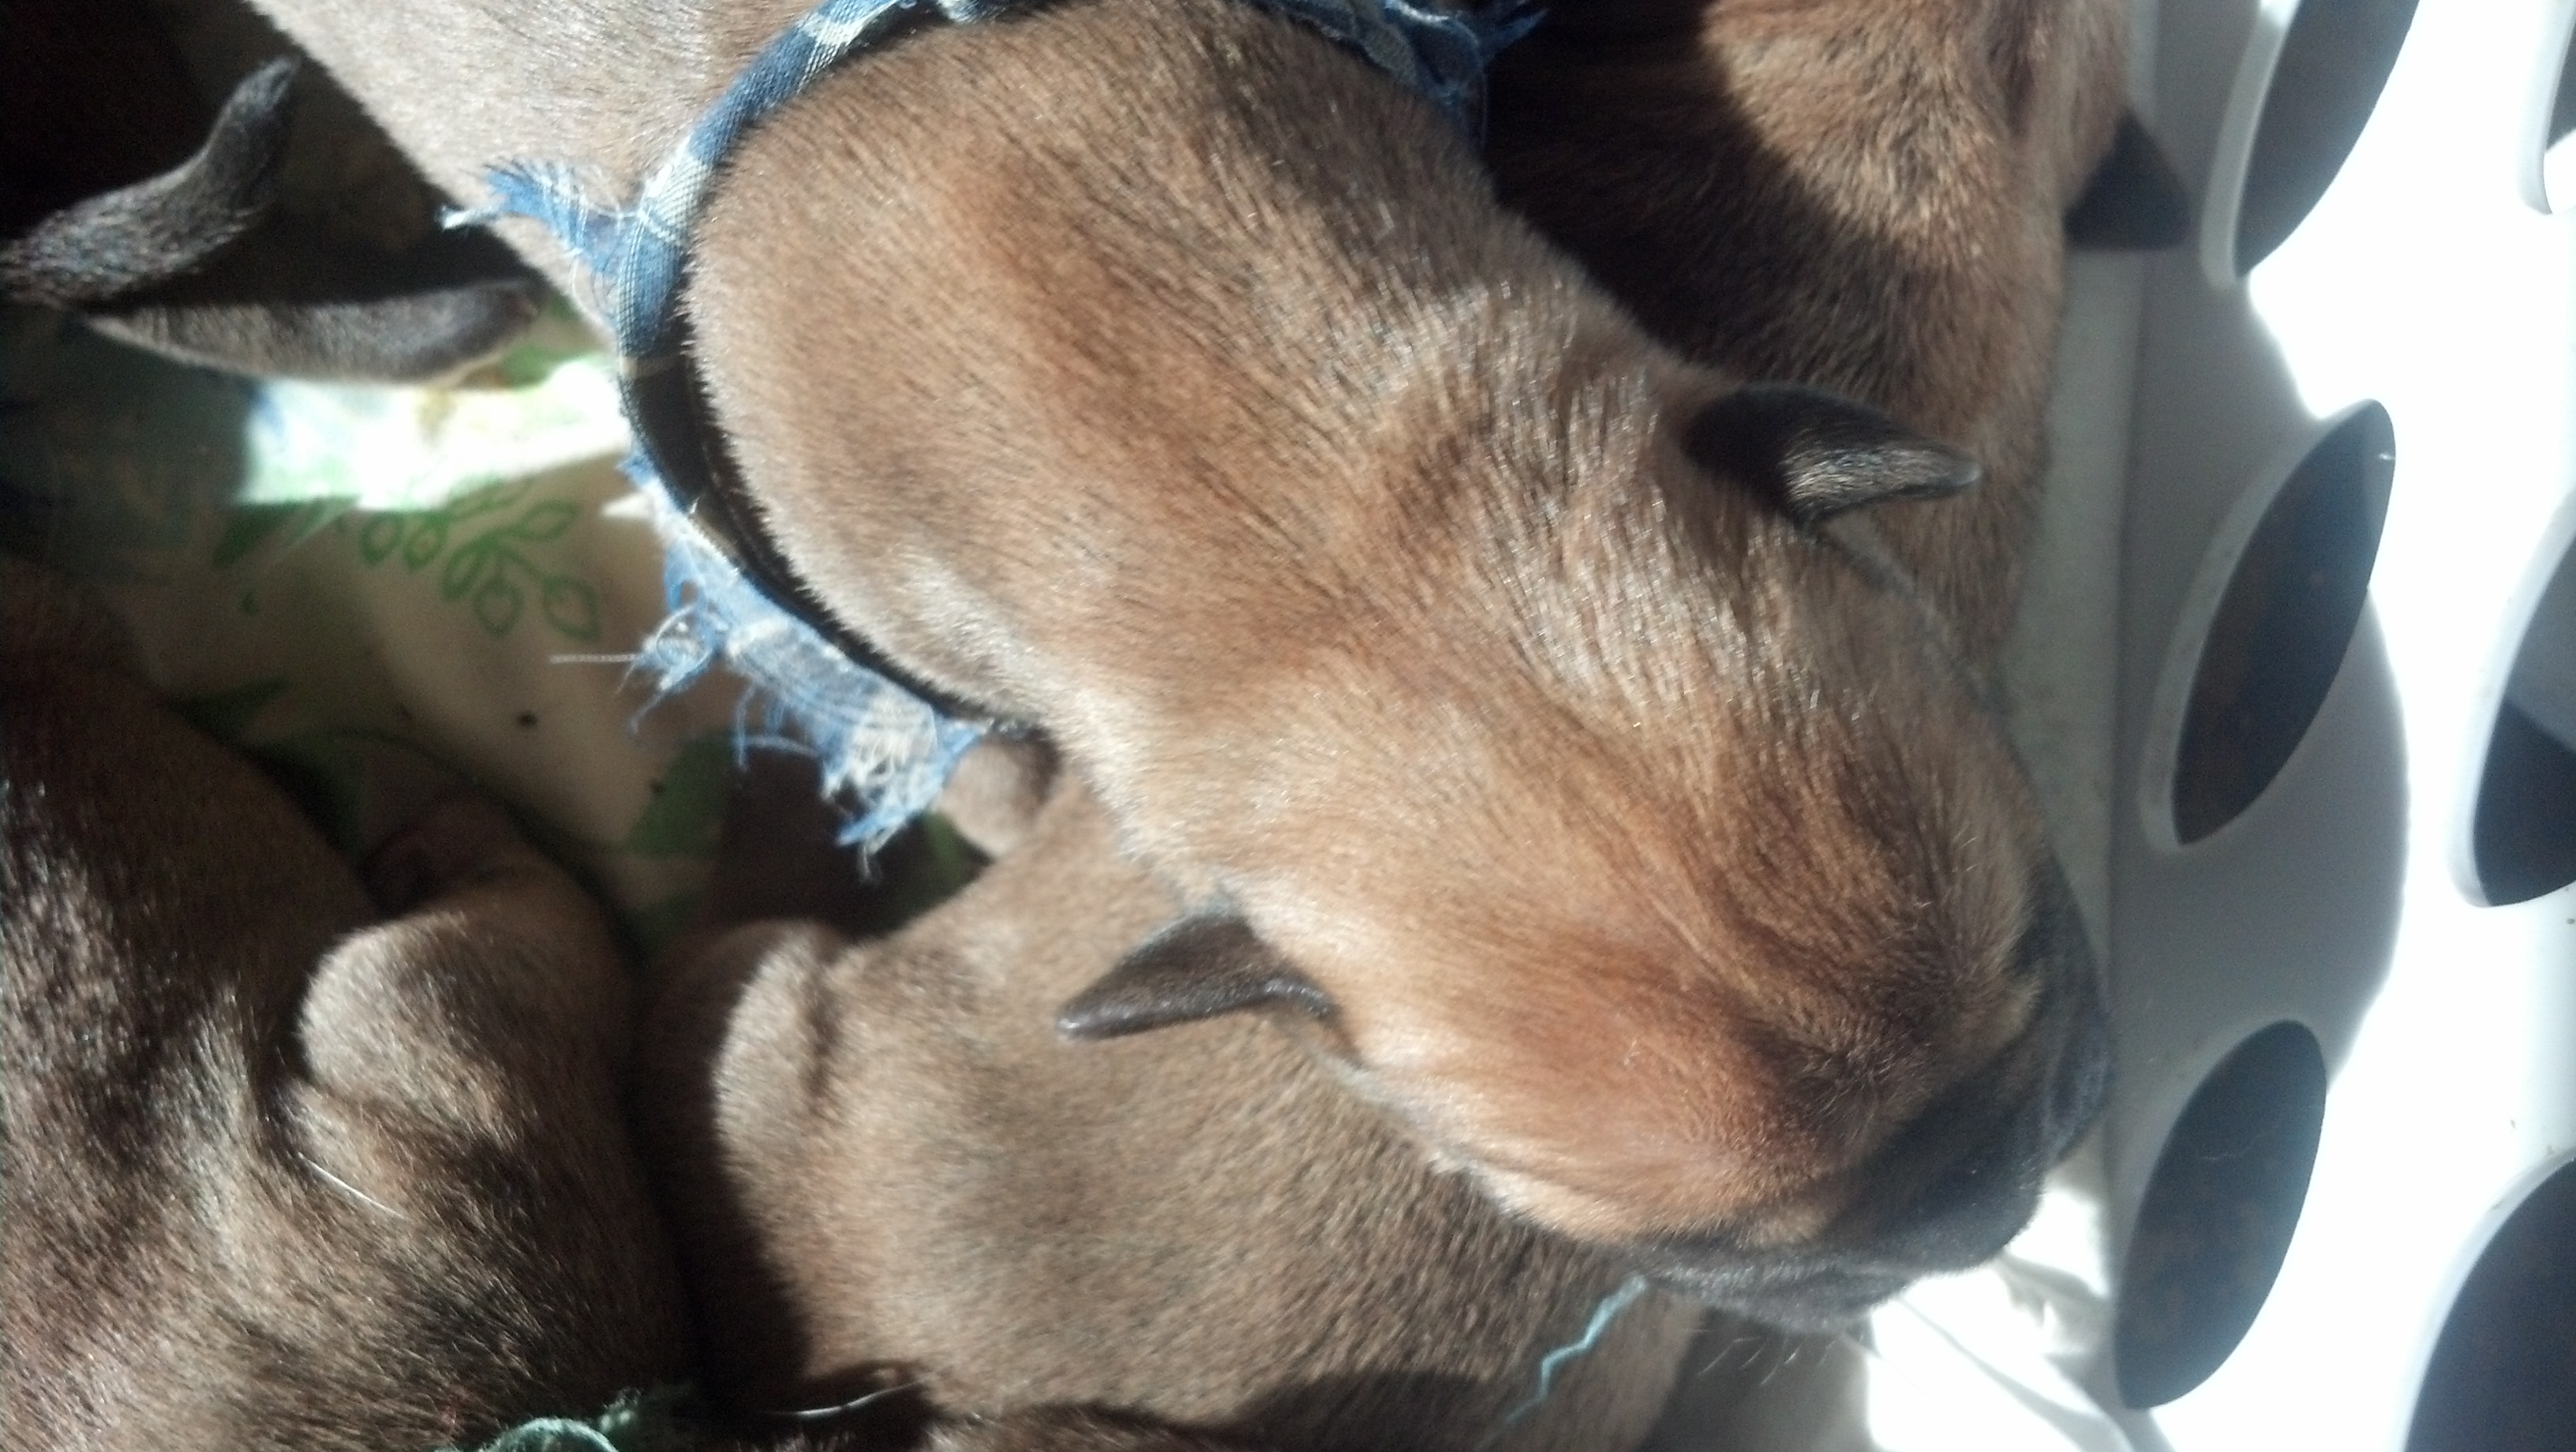  bullmastiff puppies for sale